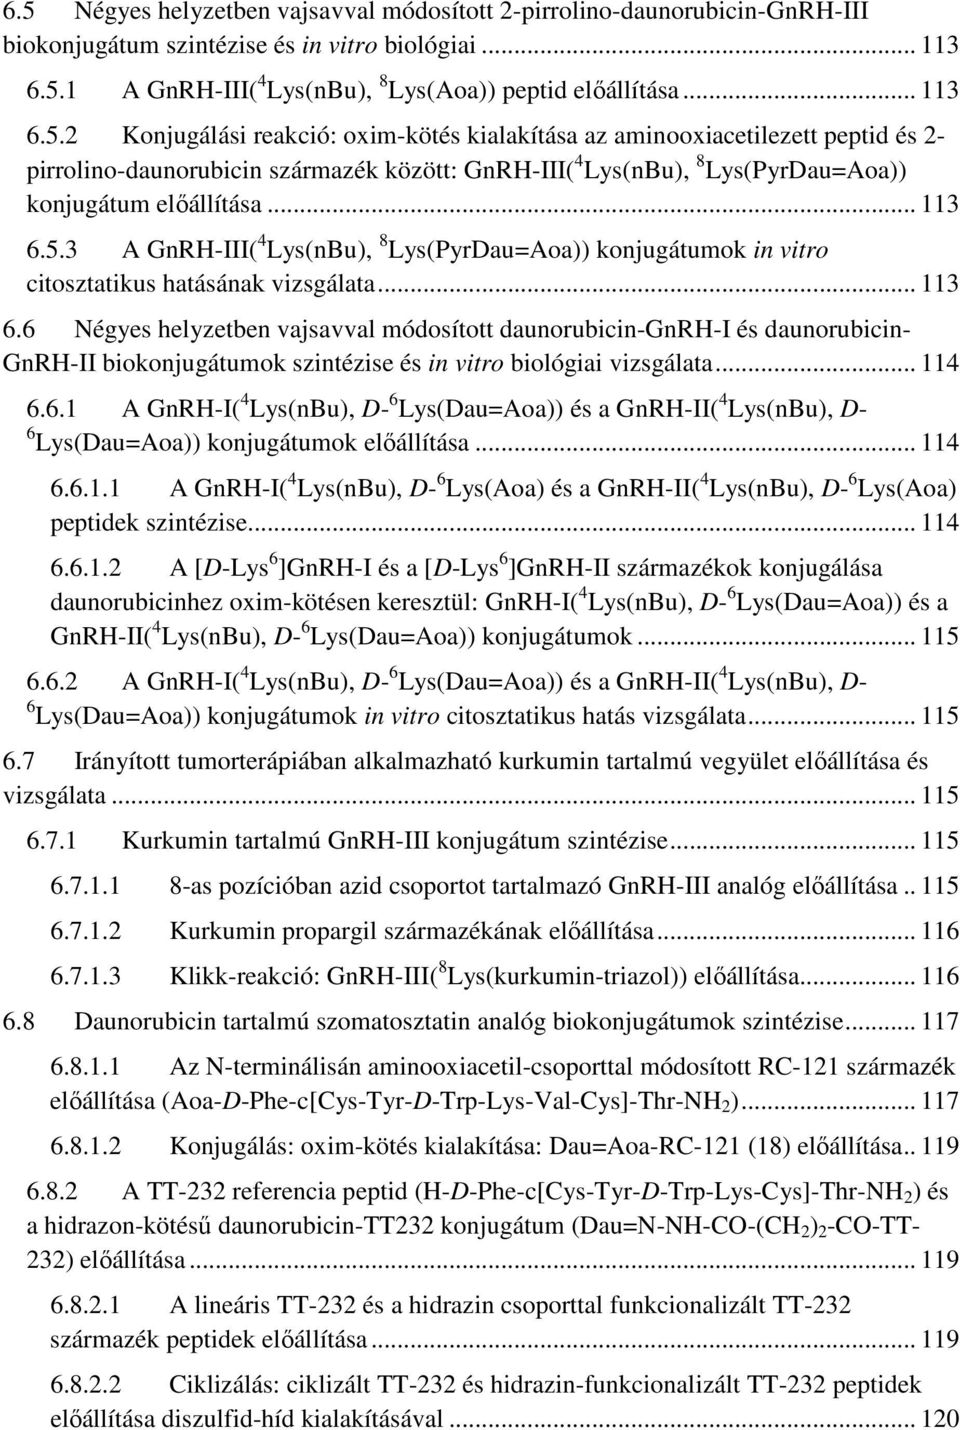 .. 114 6.6.1 A GnRH-I( 4 Lys(nBu), D- 6 Lys(Dau=Aoa)) és a GnRH-II( 4 Lys(nBu), D- 6 Lys(Dau=Aoa)) konjugátumok előállítása... 114 6.6.1.1 A GnRH-I( 4 Lys(nBu), D- 6 Lys(Aoa) és a GnRH-II( 4 Lys(nBu), D- 6 Lys(Aoa) peptidek szintézise.